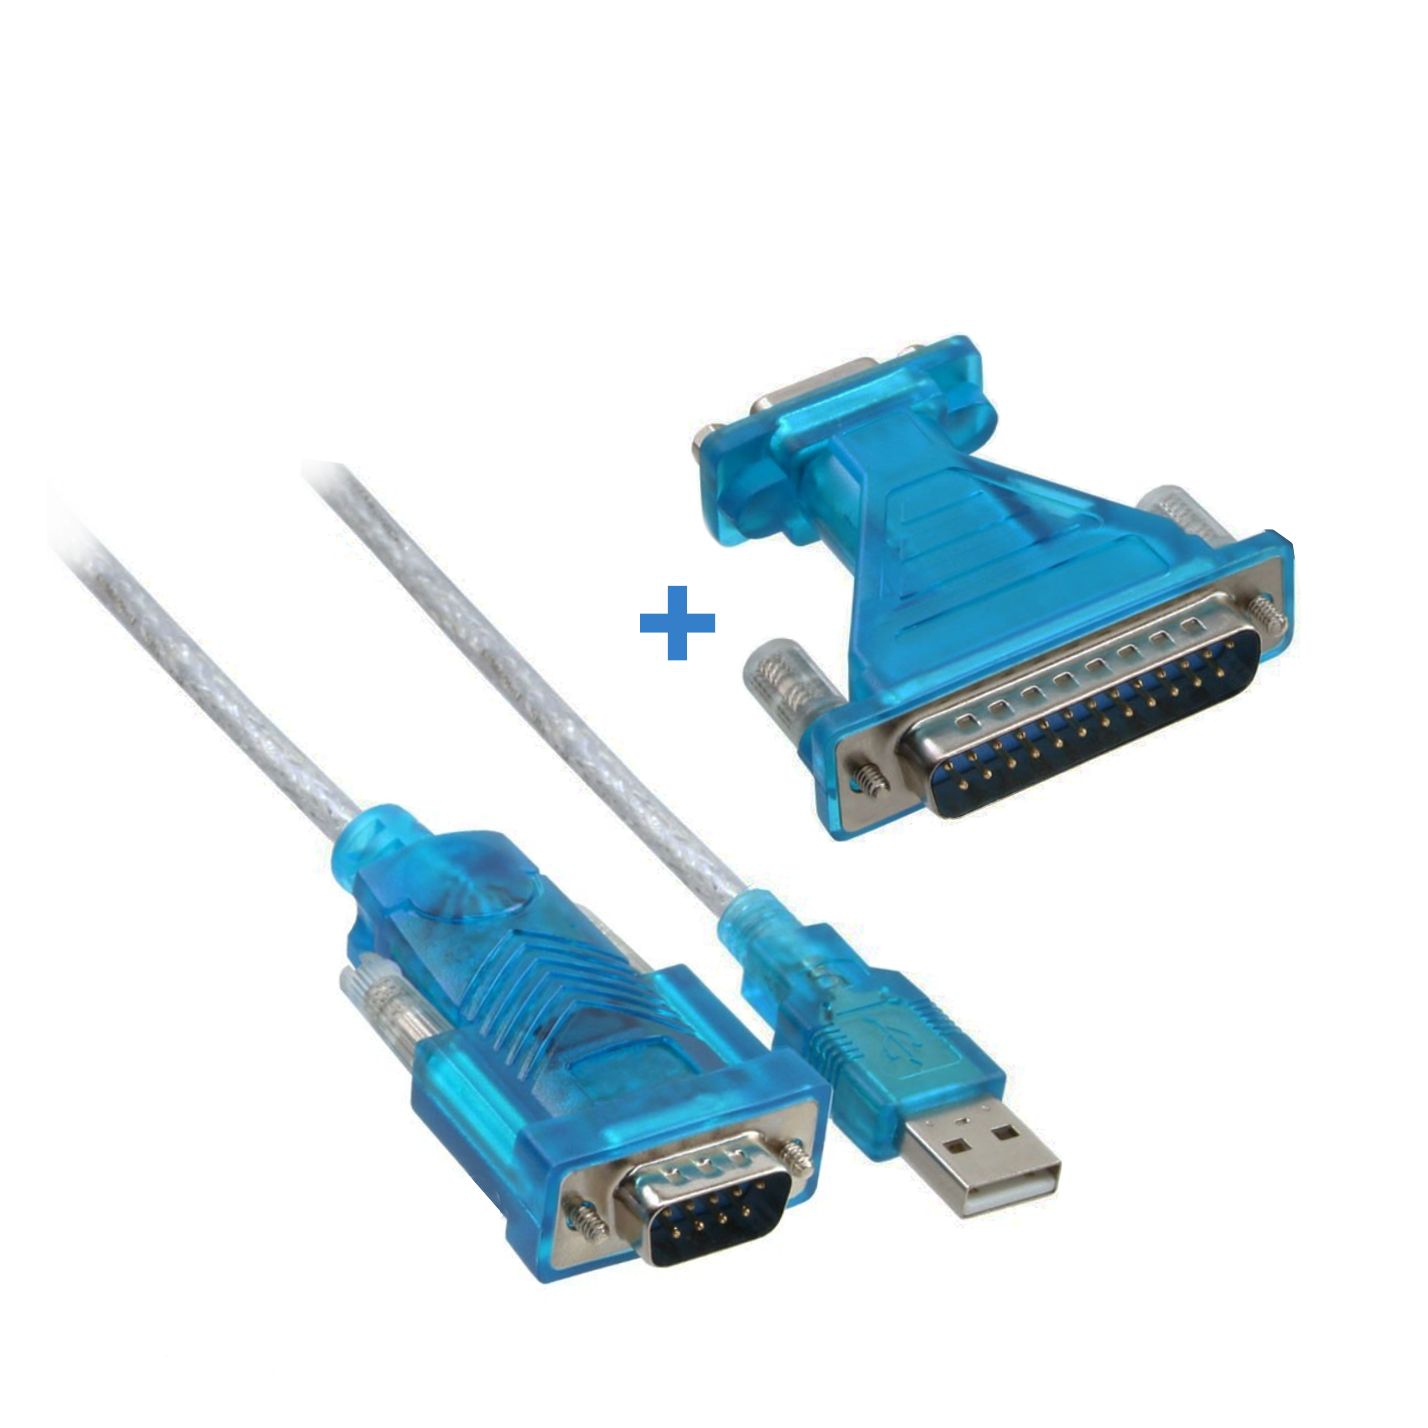 USB-Seriell-Adapterkabel für RS-232 mit FTDI-Chipsatz, USB 2.0, 180cm